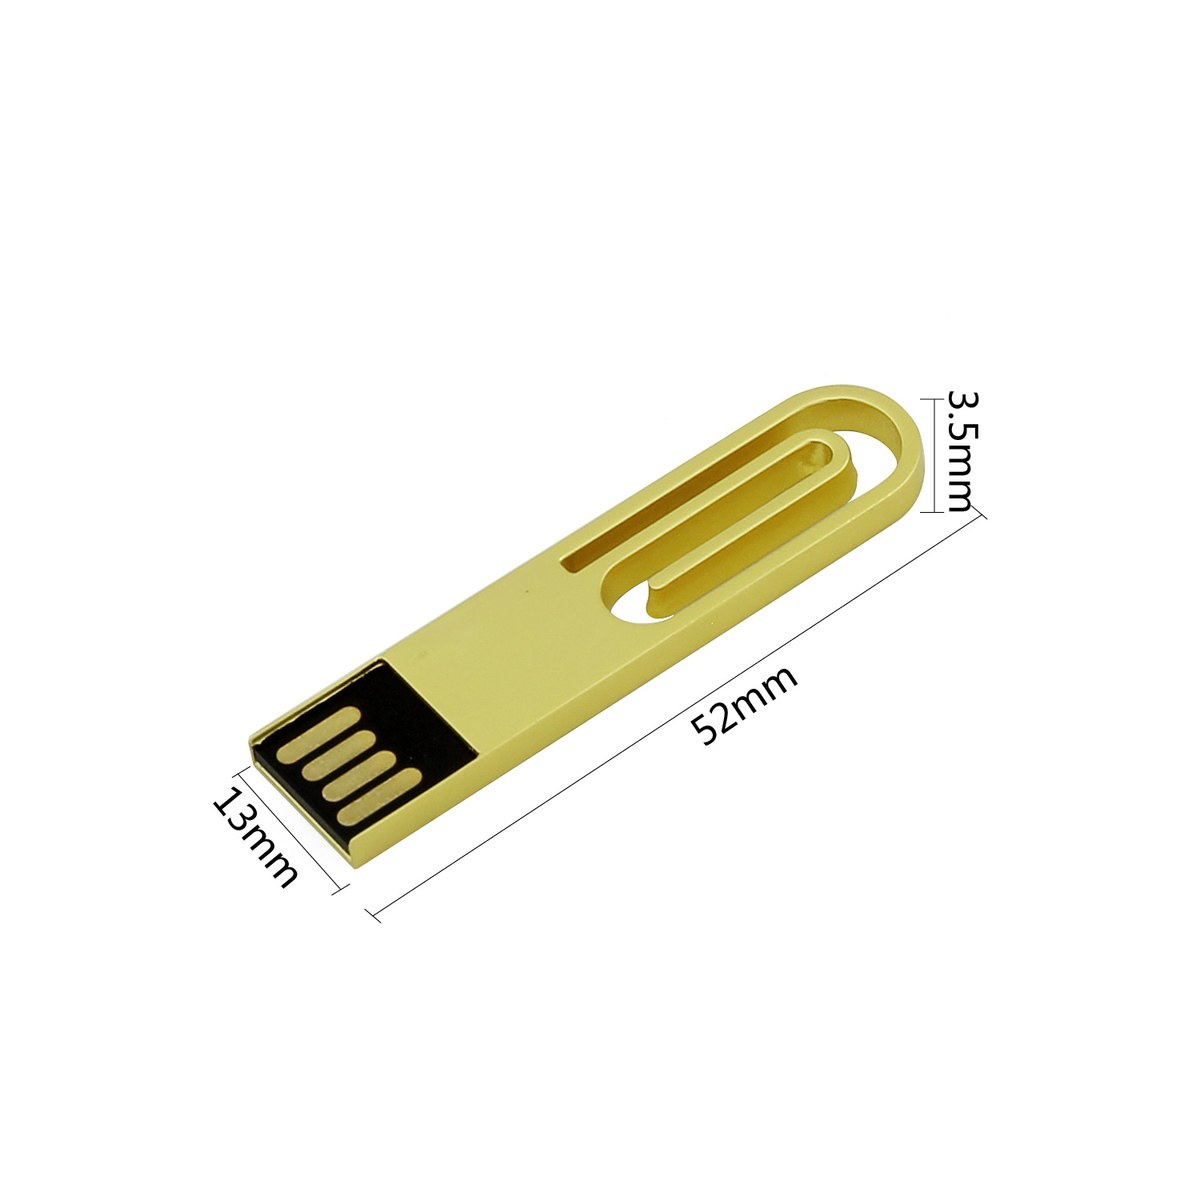 USB GERMANY ® 2 USB-Stick GB) (Blau, eCLIP